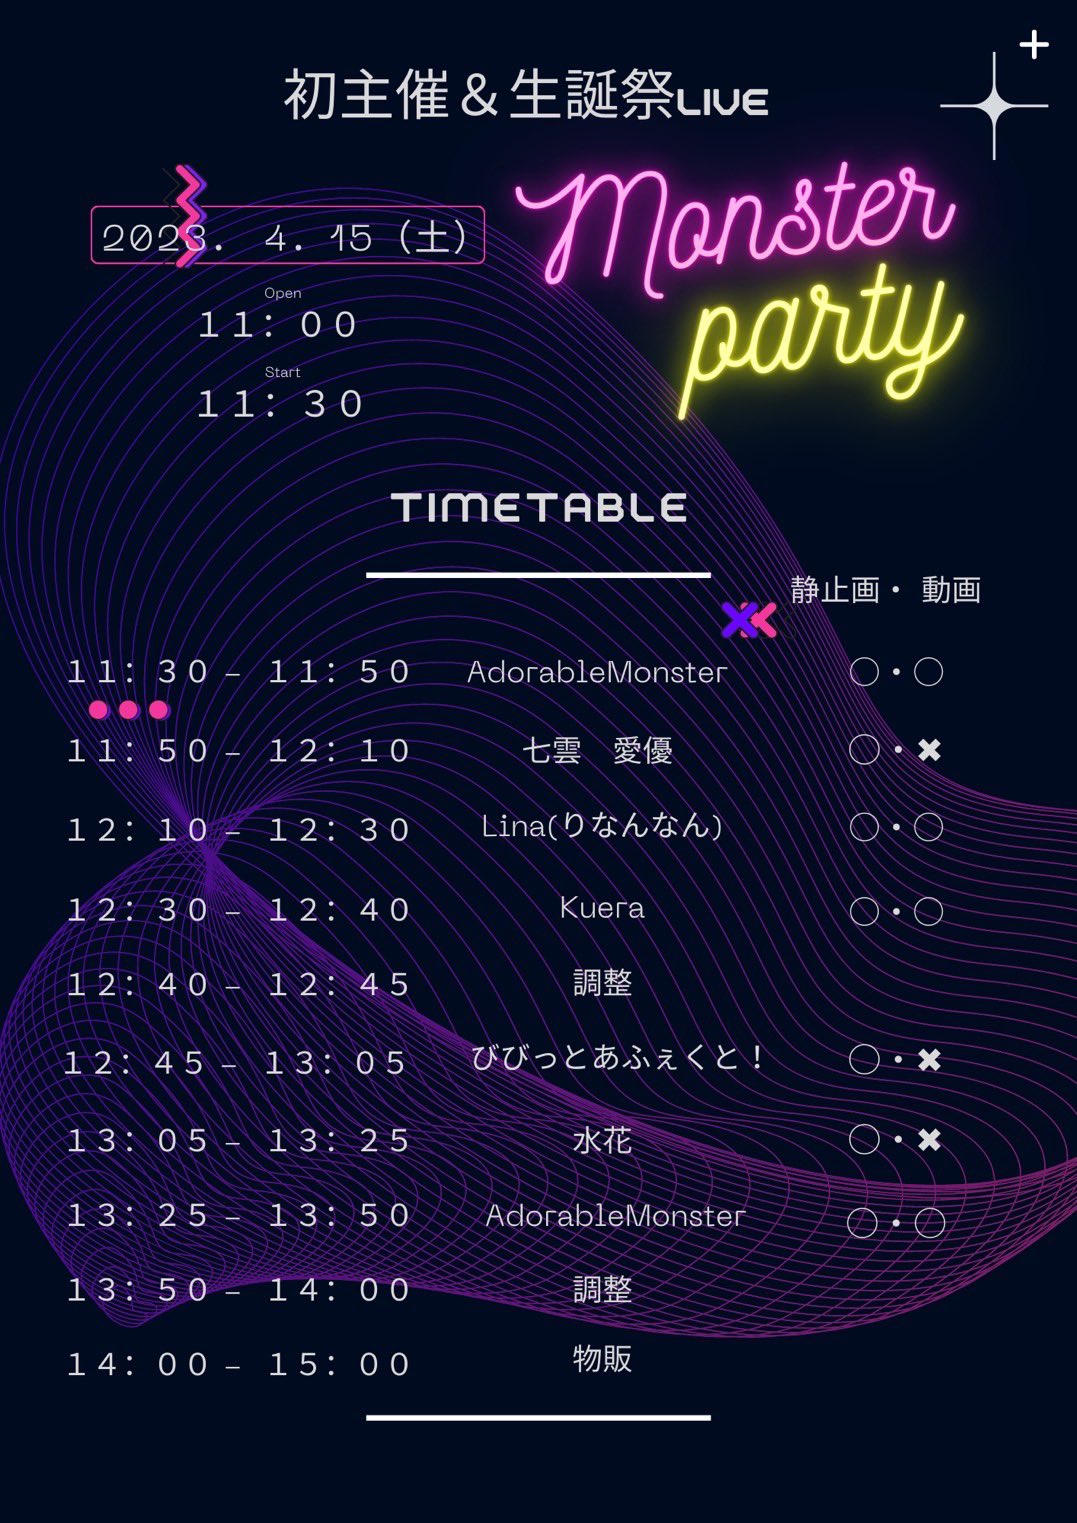 AdorableMonster 初主催&生誕祭LIVE「Monster party」